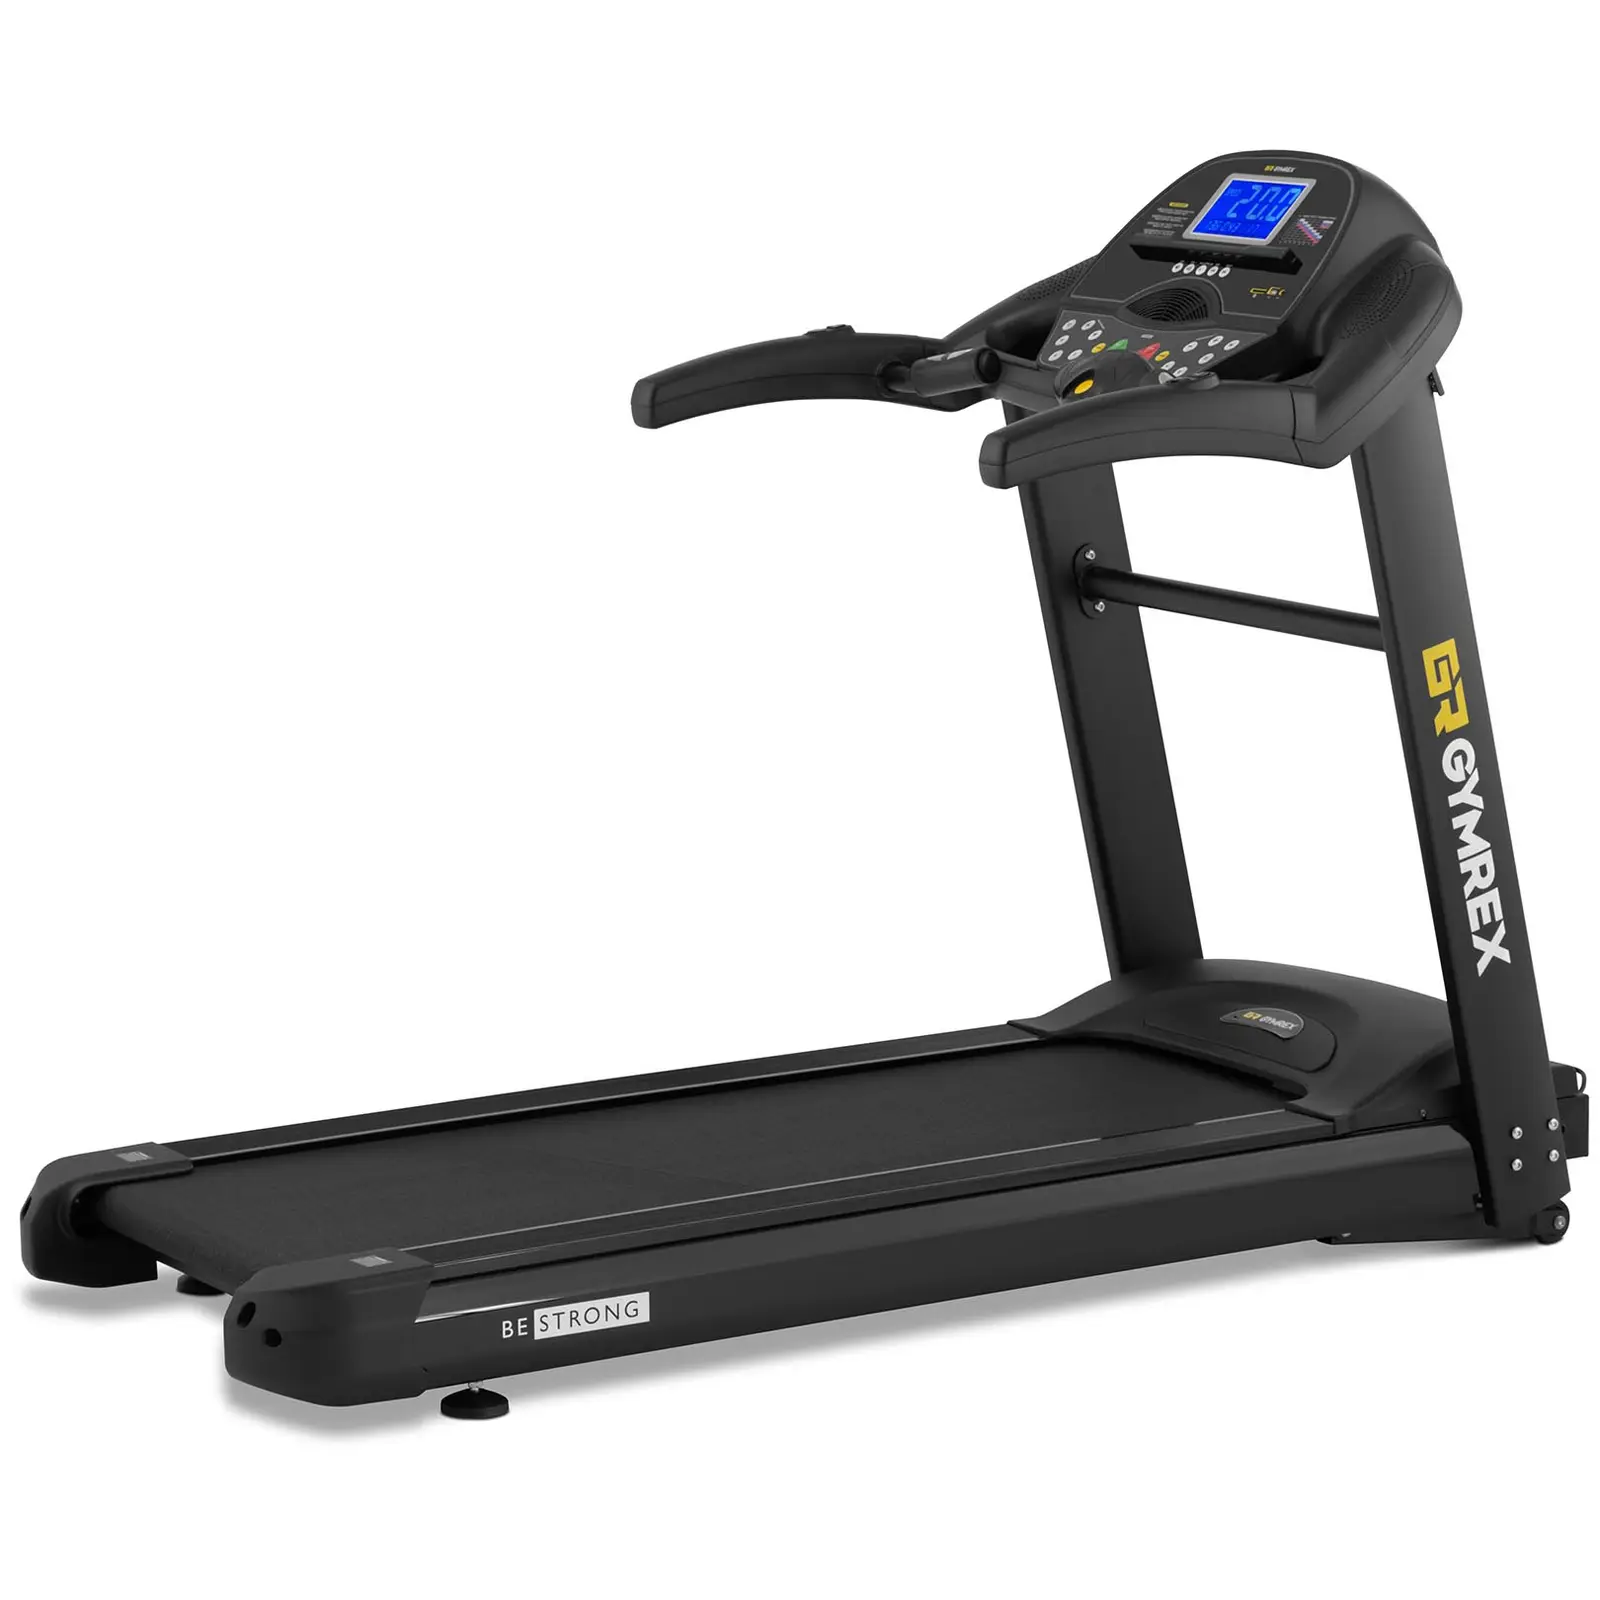 Treadmill - 1350 W - 1 - 20 km/h - 120 kg - 12 programmes